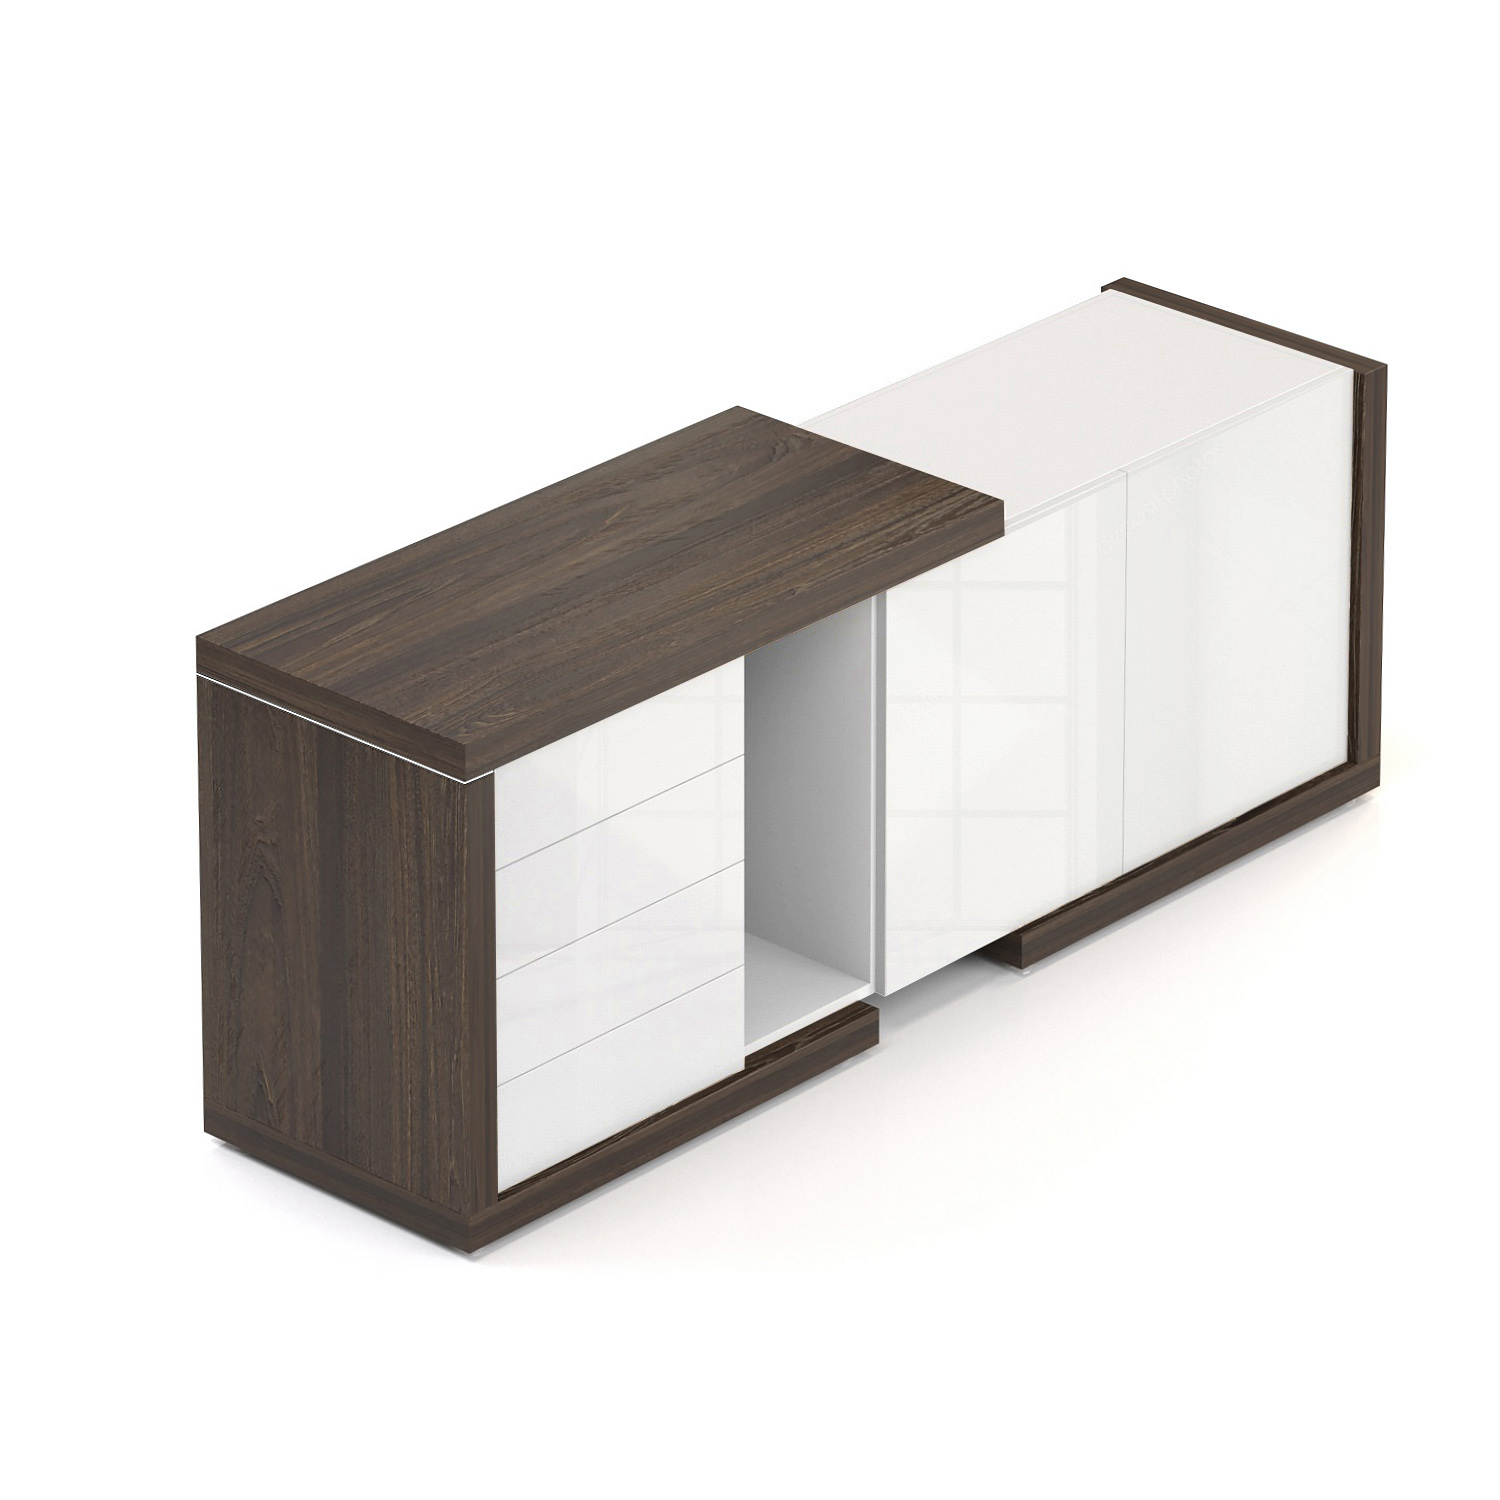 Komoda SOLID pro manažerský opěrný stůl, se dvěma dveřmi a zásuvkami 170cm (Komoda SOLID pro manažerský opěrný stůl, se dvěma dveřmi, 4 zásuvky, délka 170cm, hloubka 50cm)